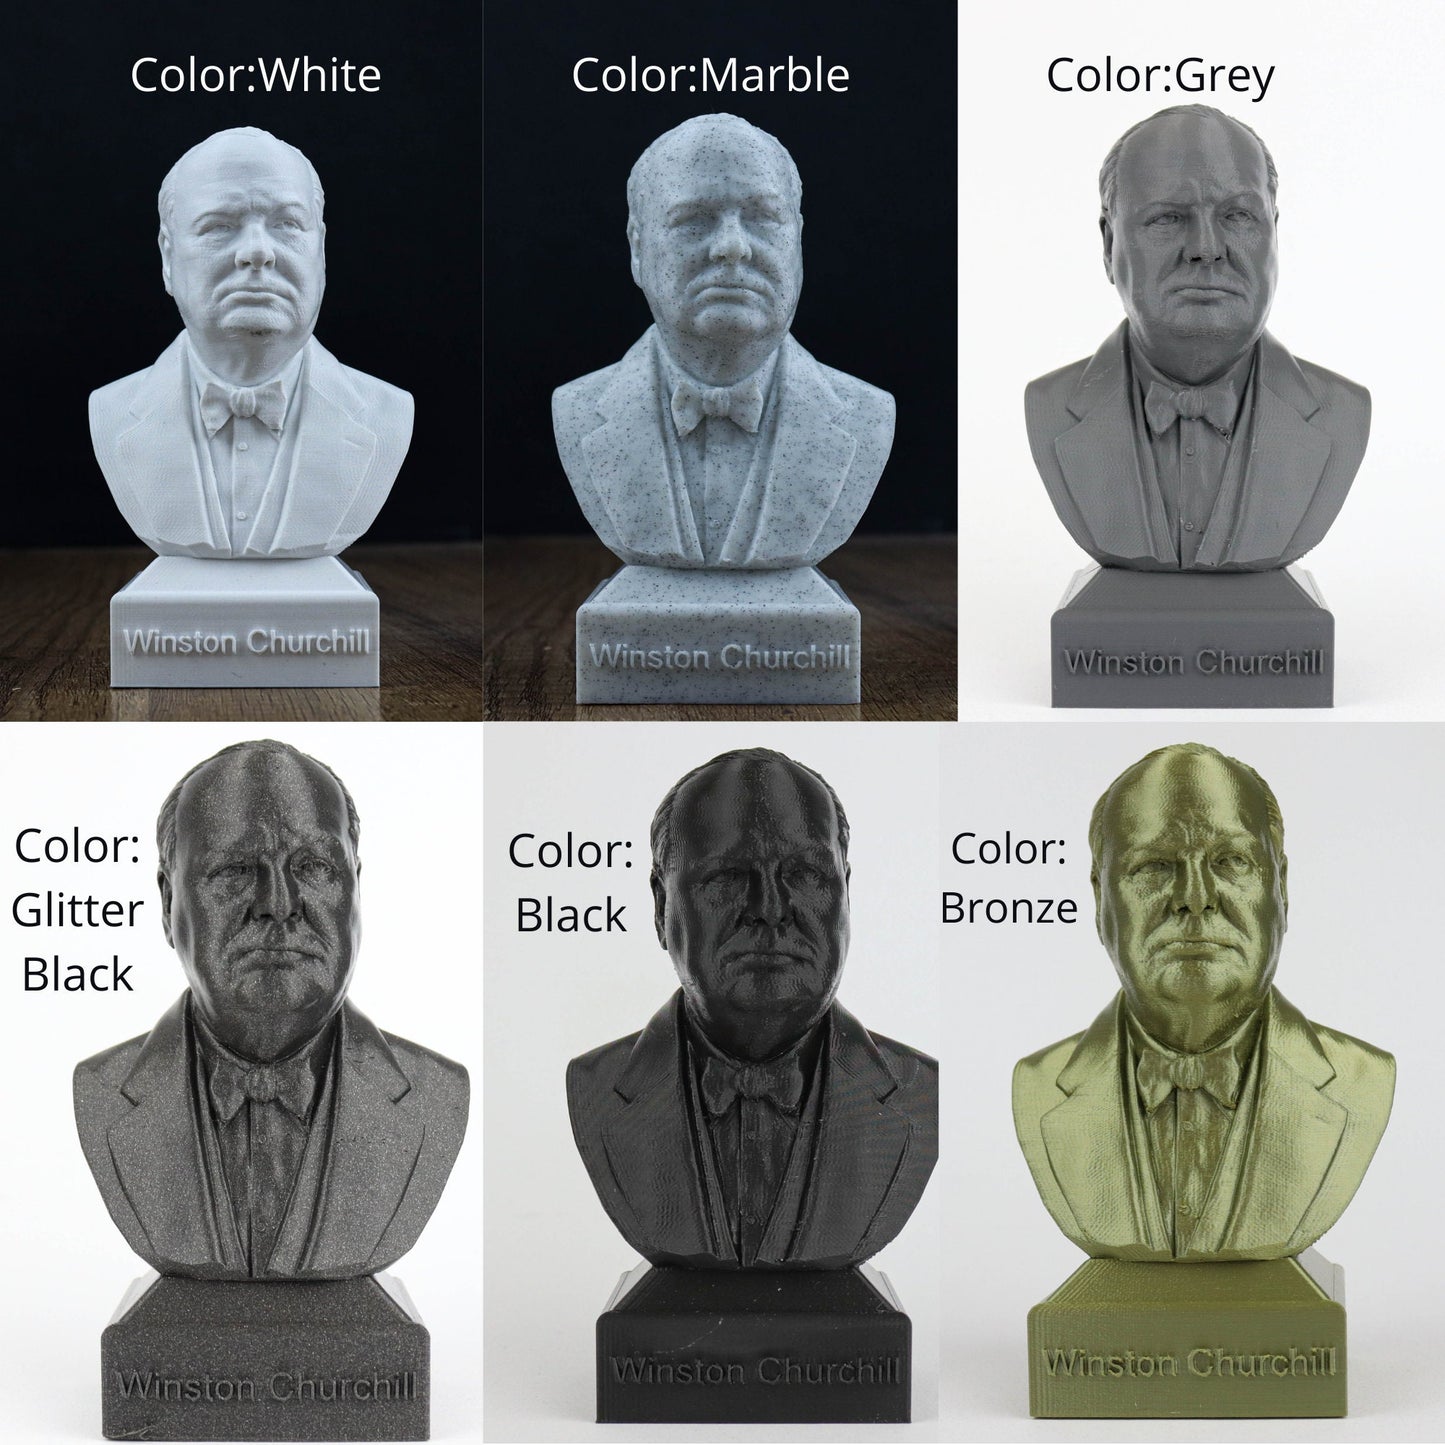 Erwin Schrodinger 3D Sculpture Bust